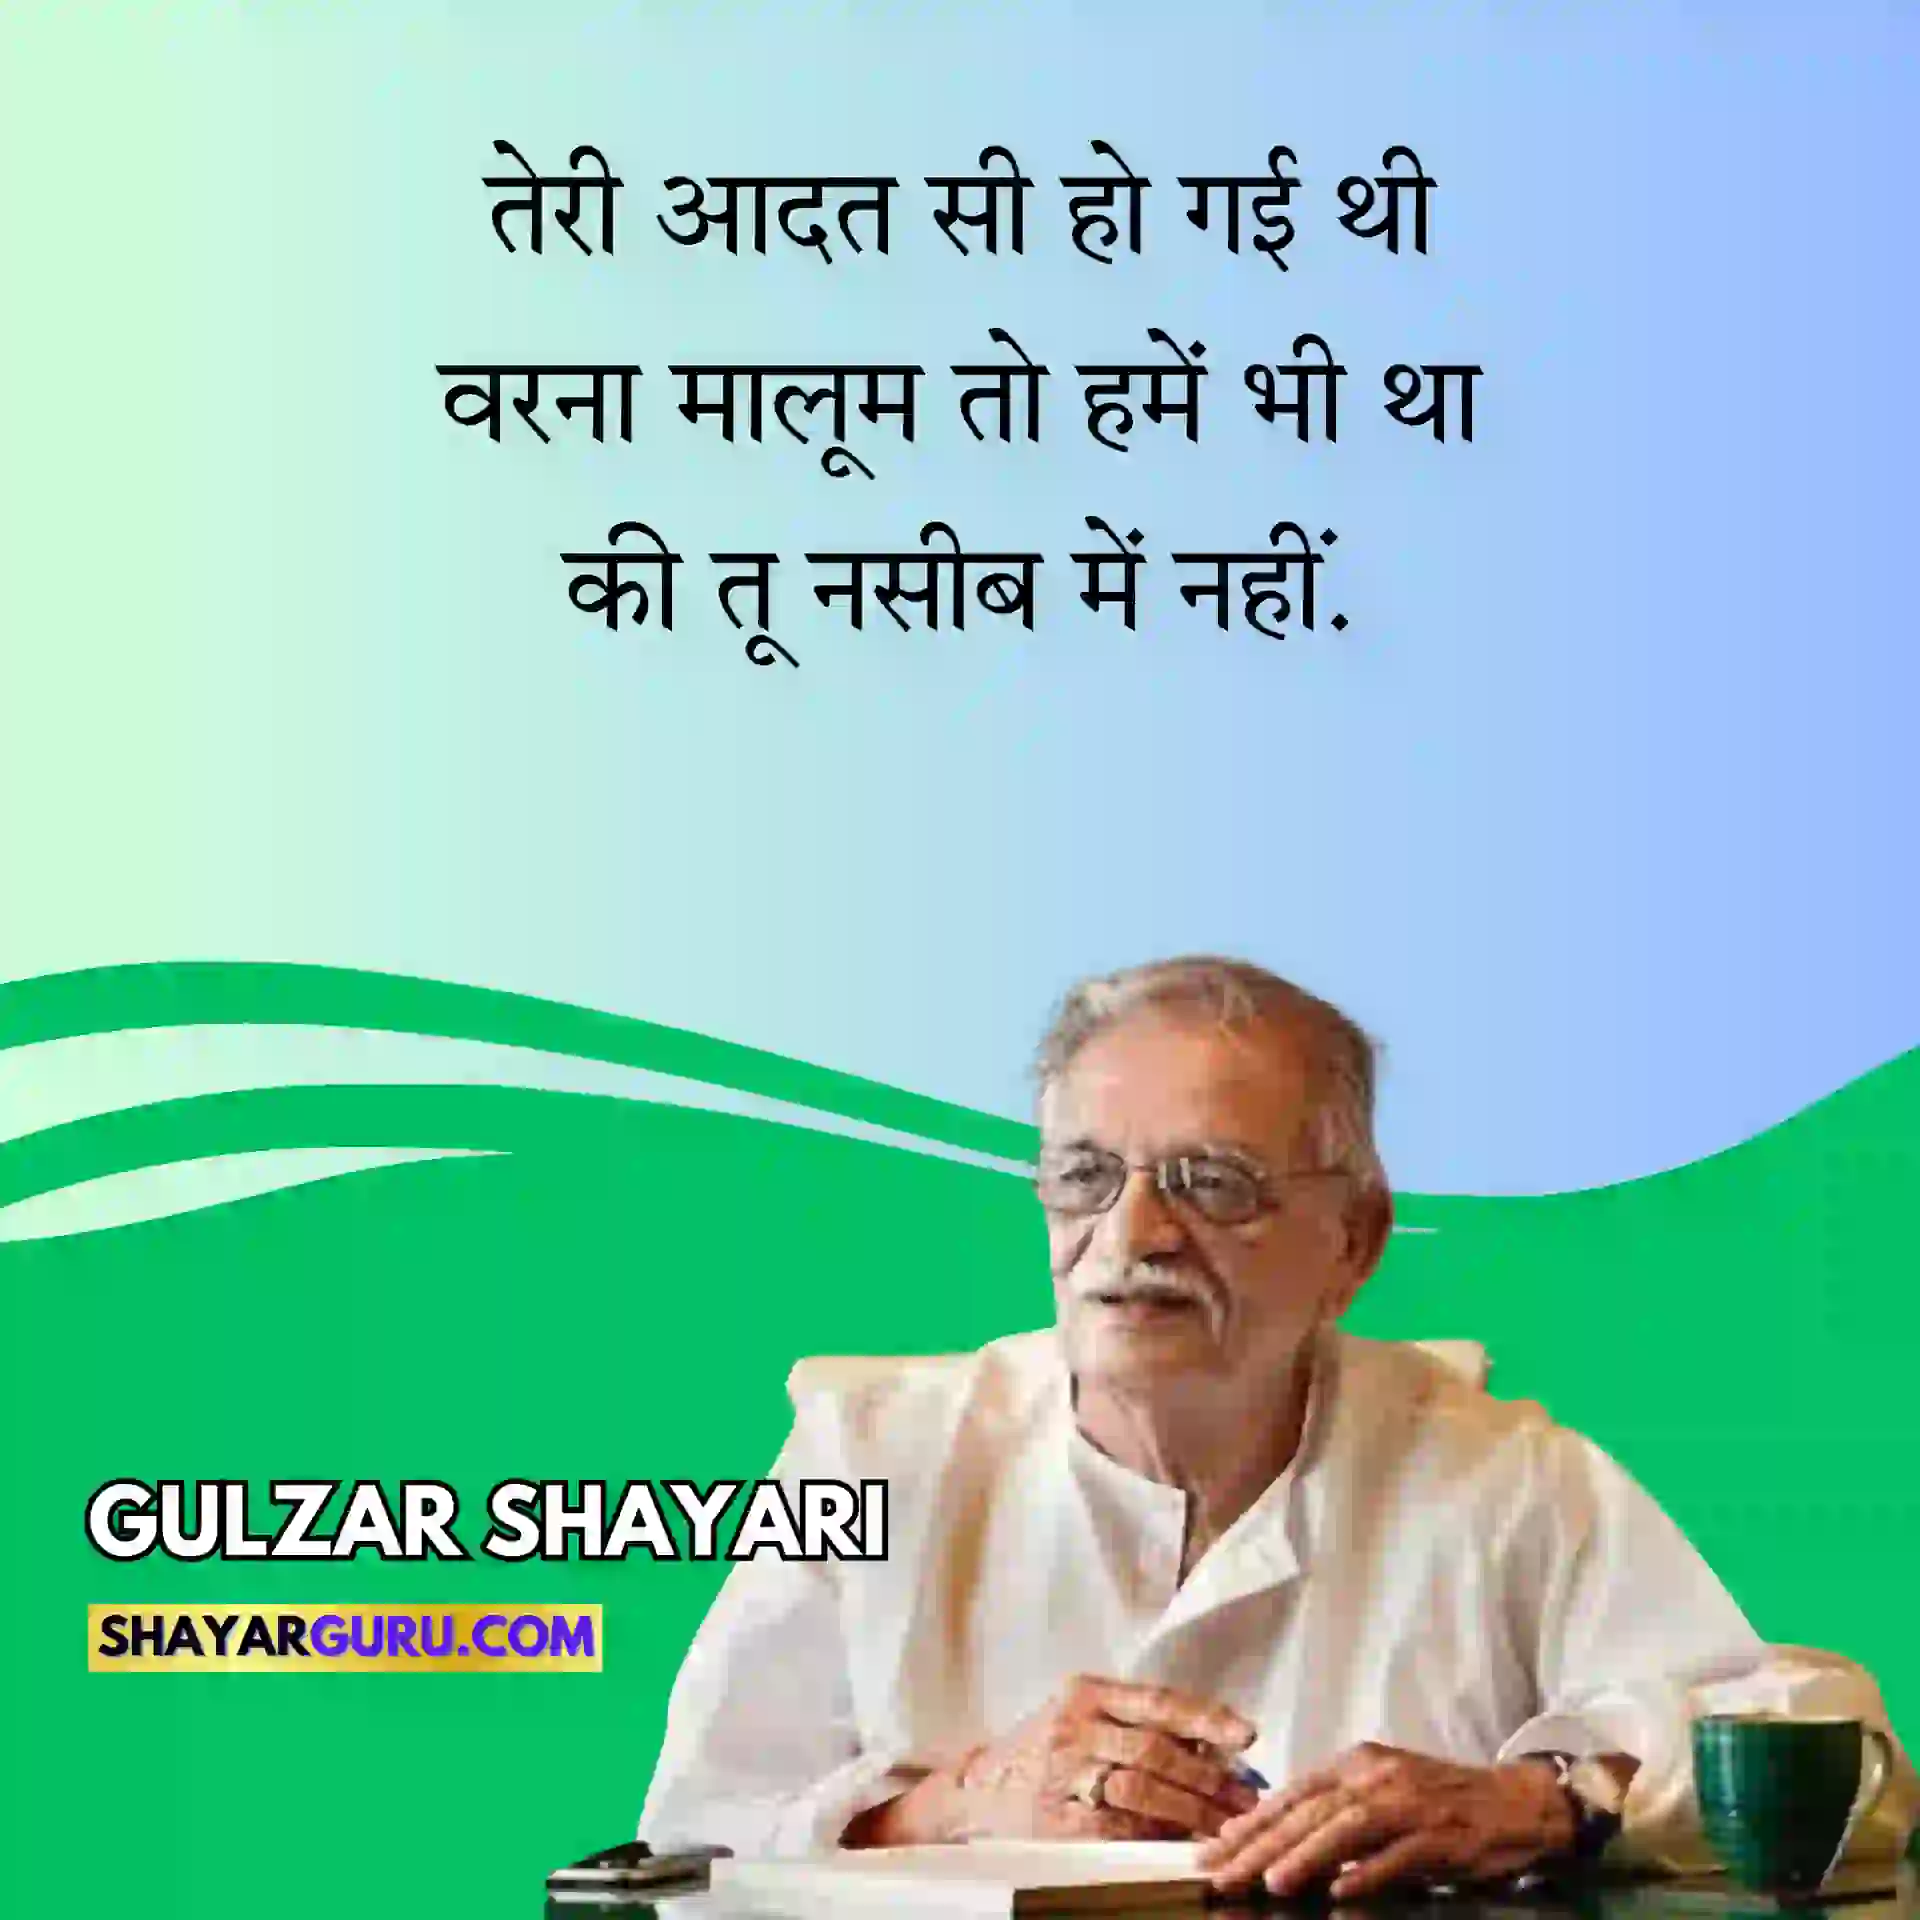 Famous Gulzar Shayari Zindagi